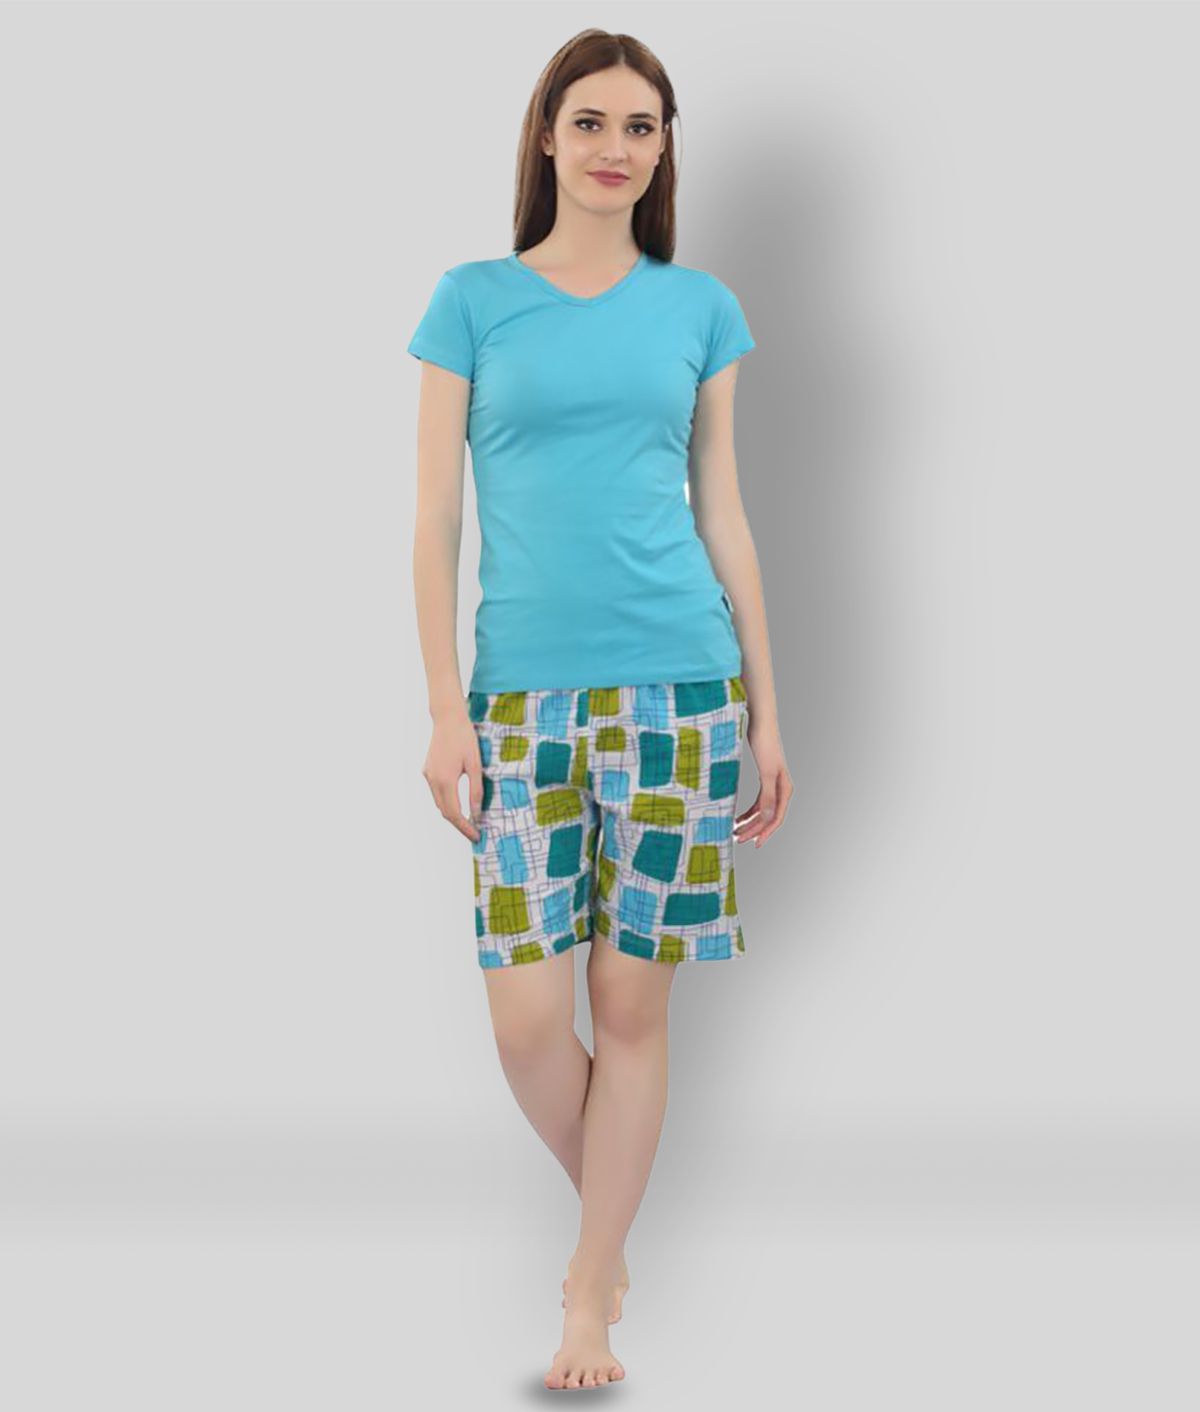     			Zebu - Multicolor Cotton Women's Nightwear Nightsuit Sets ( Pack of 1 )